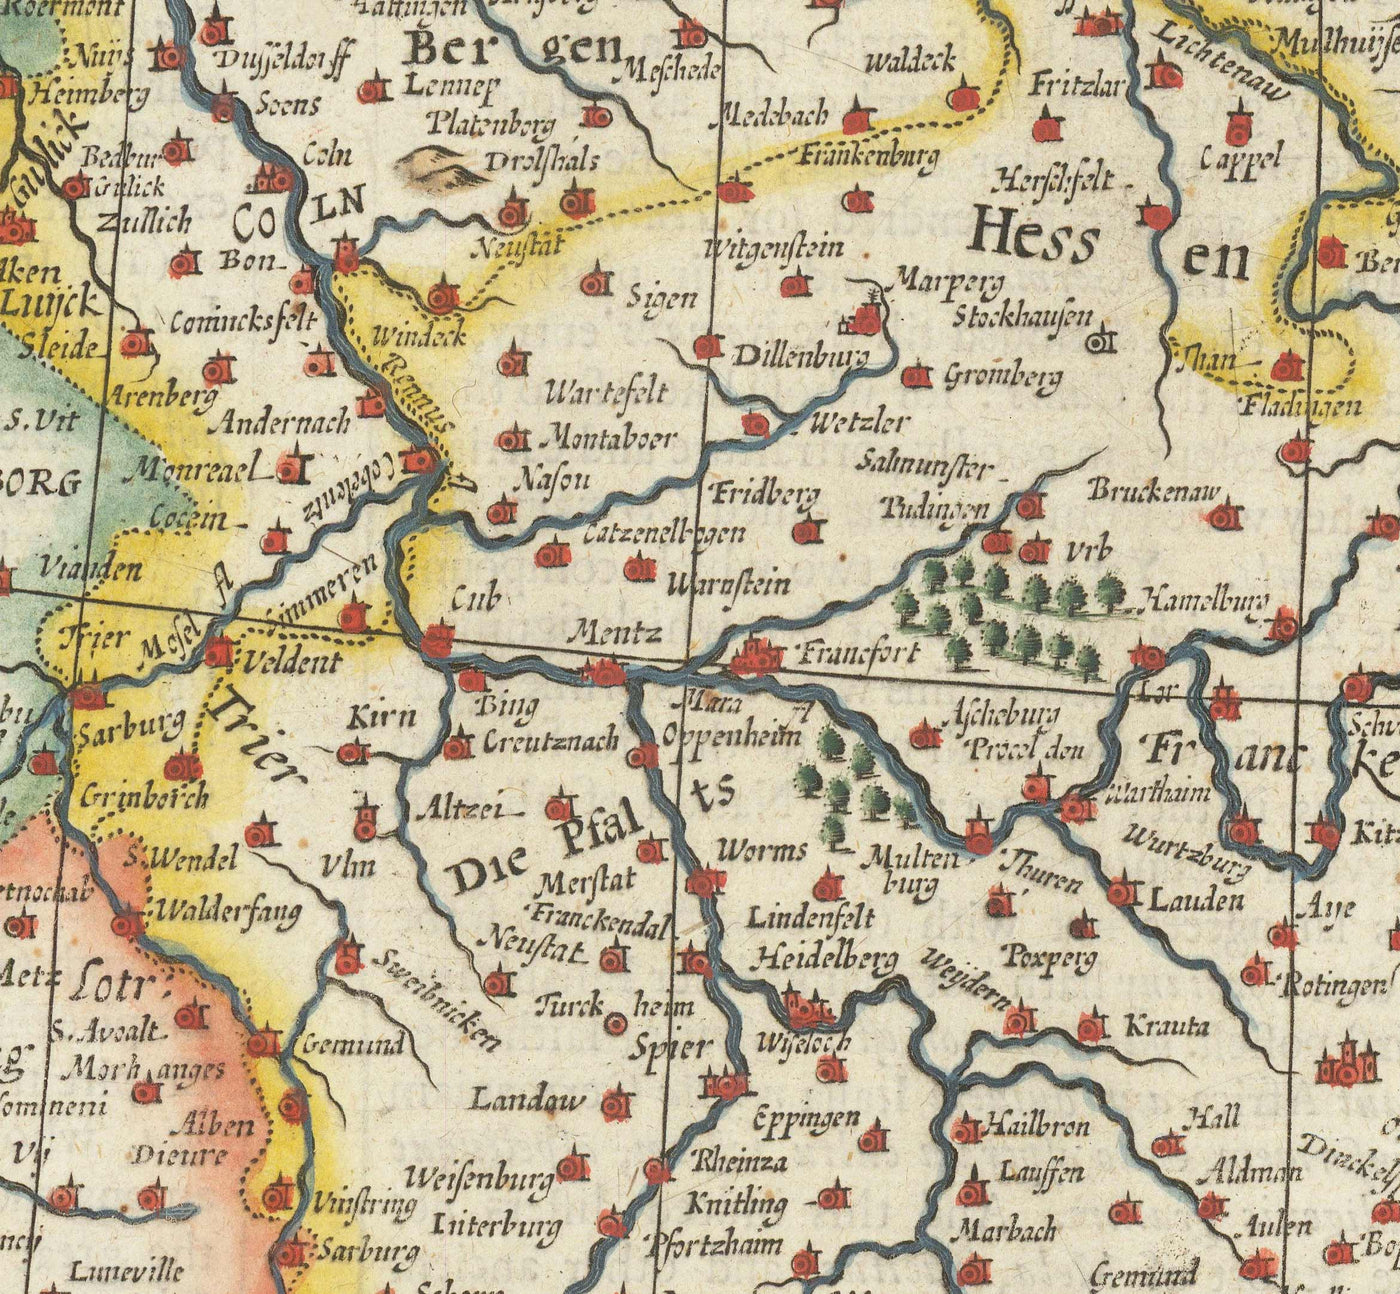 Alte Karte von Deutschland von John Speed, 1627 - Heiliges Römisches Reich, Deutsches Reich - Österreich, Tschechien, Polen, Schweiz